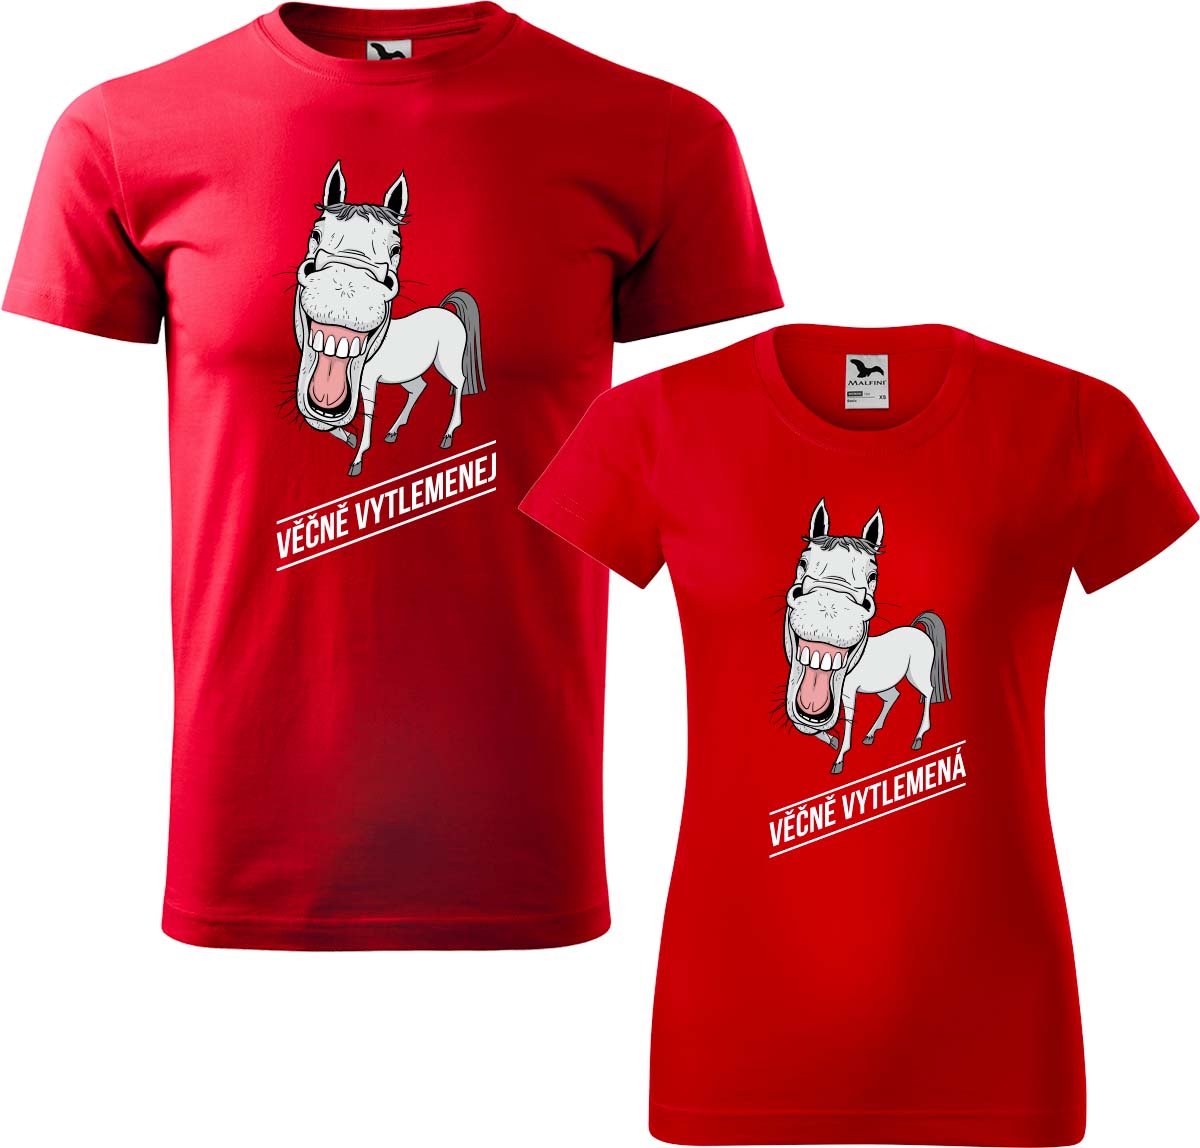 Trička pro páry - Věčně vytlemenej a věčně vytlemená Barva: Červená (07), Velikost dámské tričko: S, Velikost pánské tričko: M